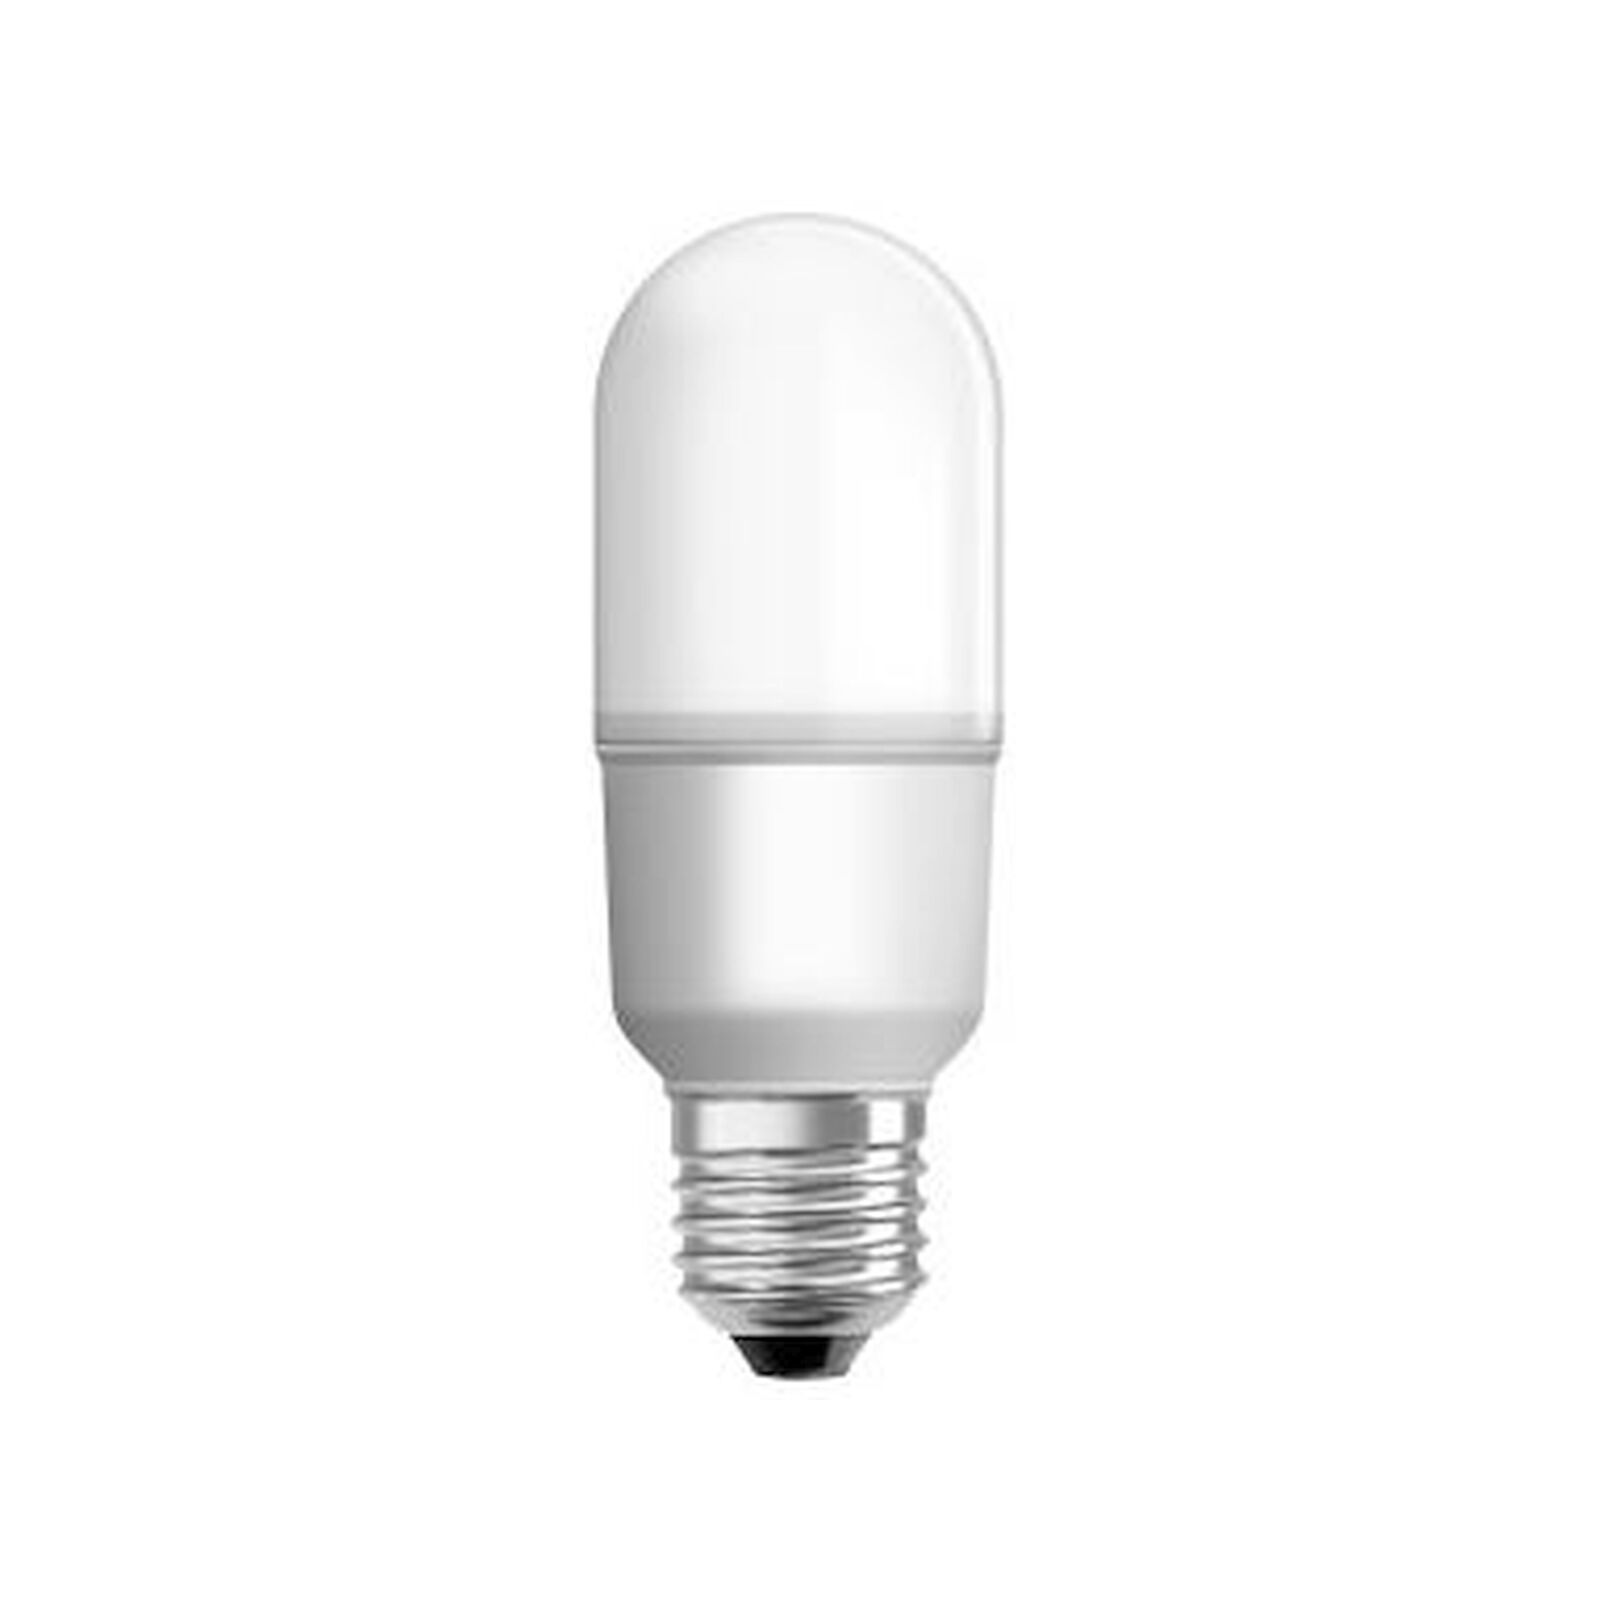 Stick E27 LED 800lm White Dimmable Light 1 Pack - Bunnings Australia